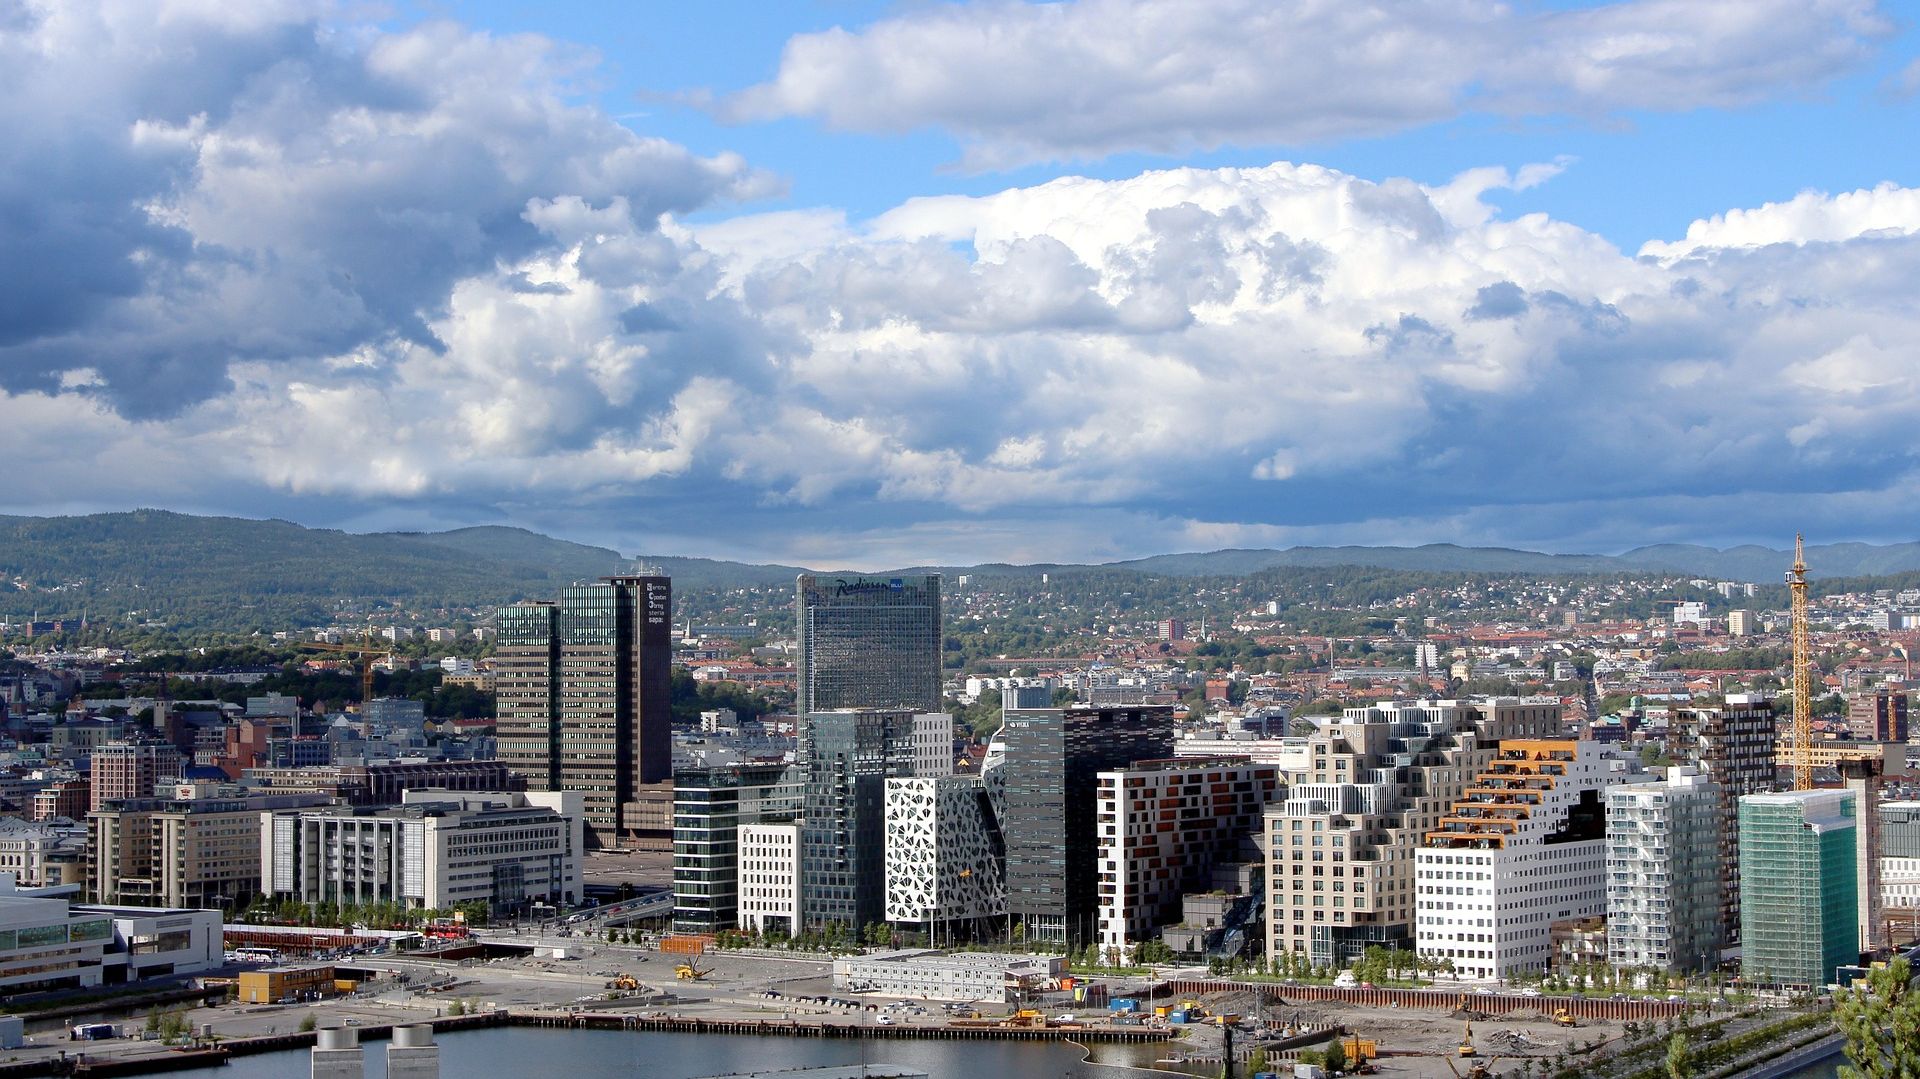 Oslo to stolica i największe miasto Norwegii. Fot. pixabay.com / AlexvonGutthenbach-Lindau (CC0 domena publiczna)